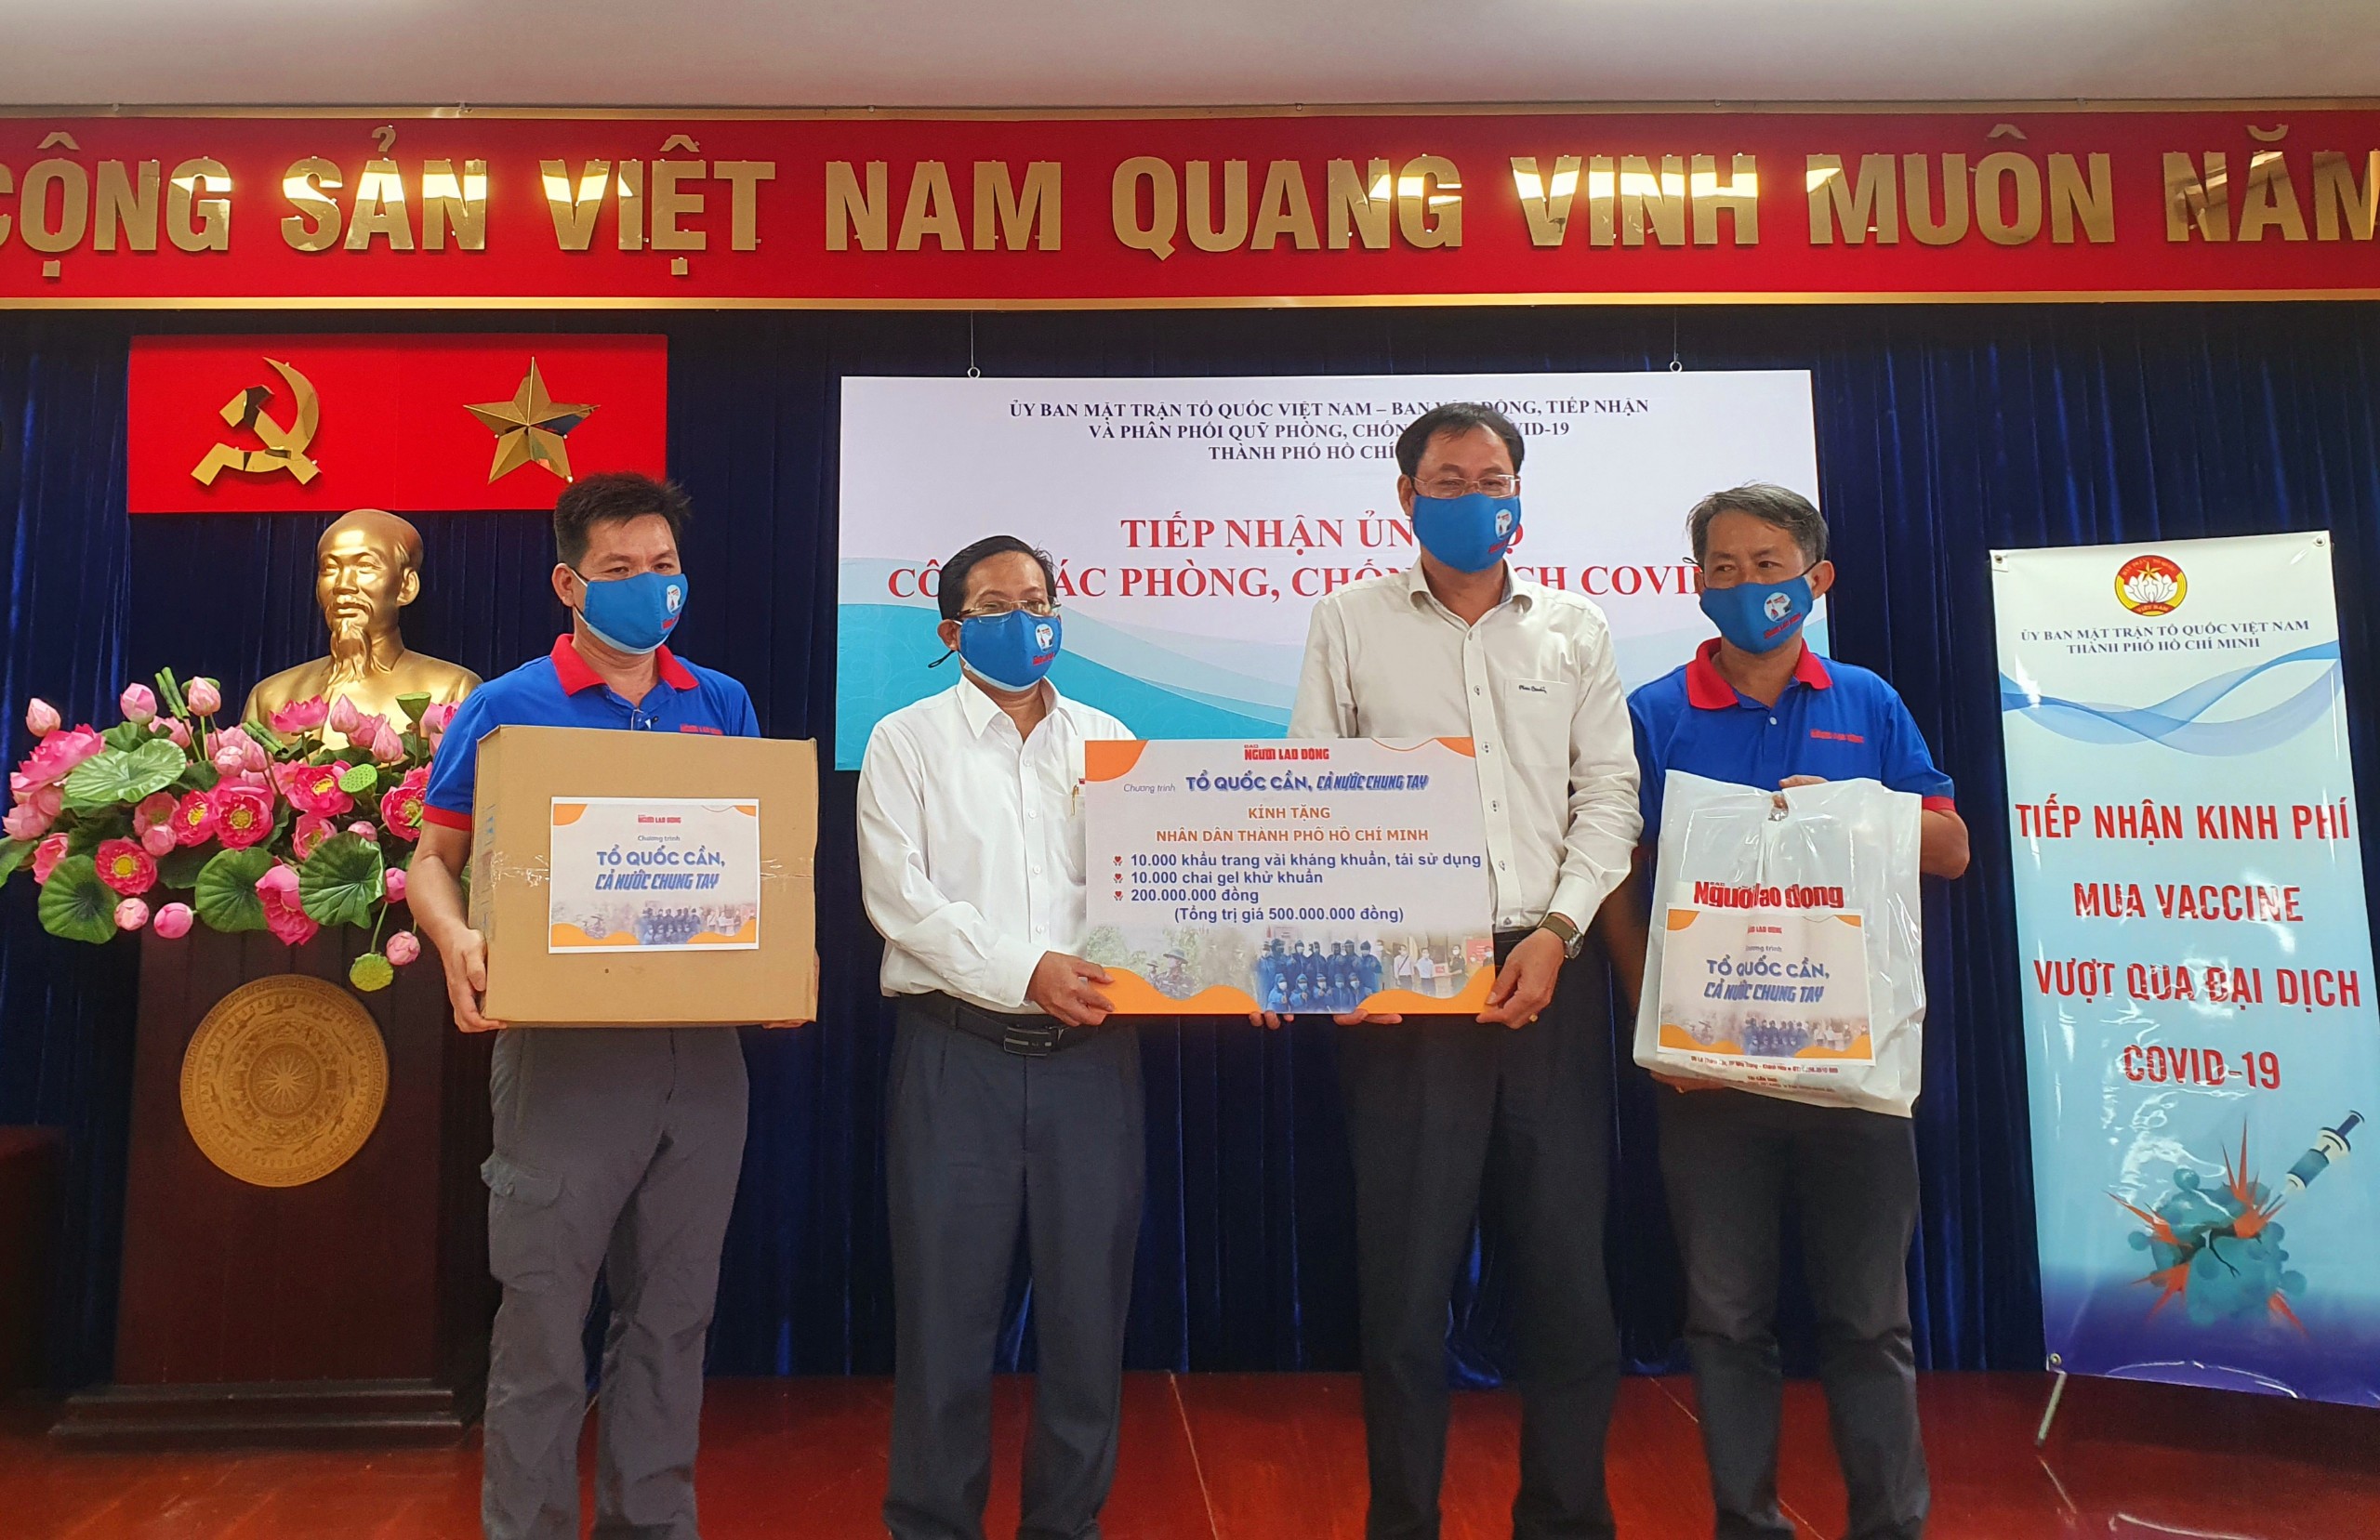 Ngày đầu giãn cách xã hội: Báo Người Lao Động trao tiền, khẩu trang cho nhân dân TP HCM - Ảnh 2.